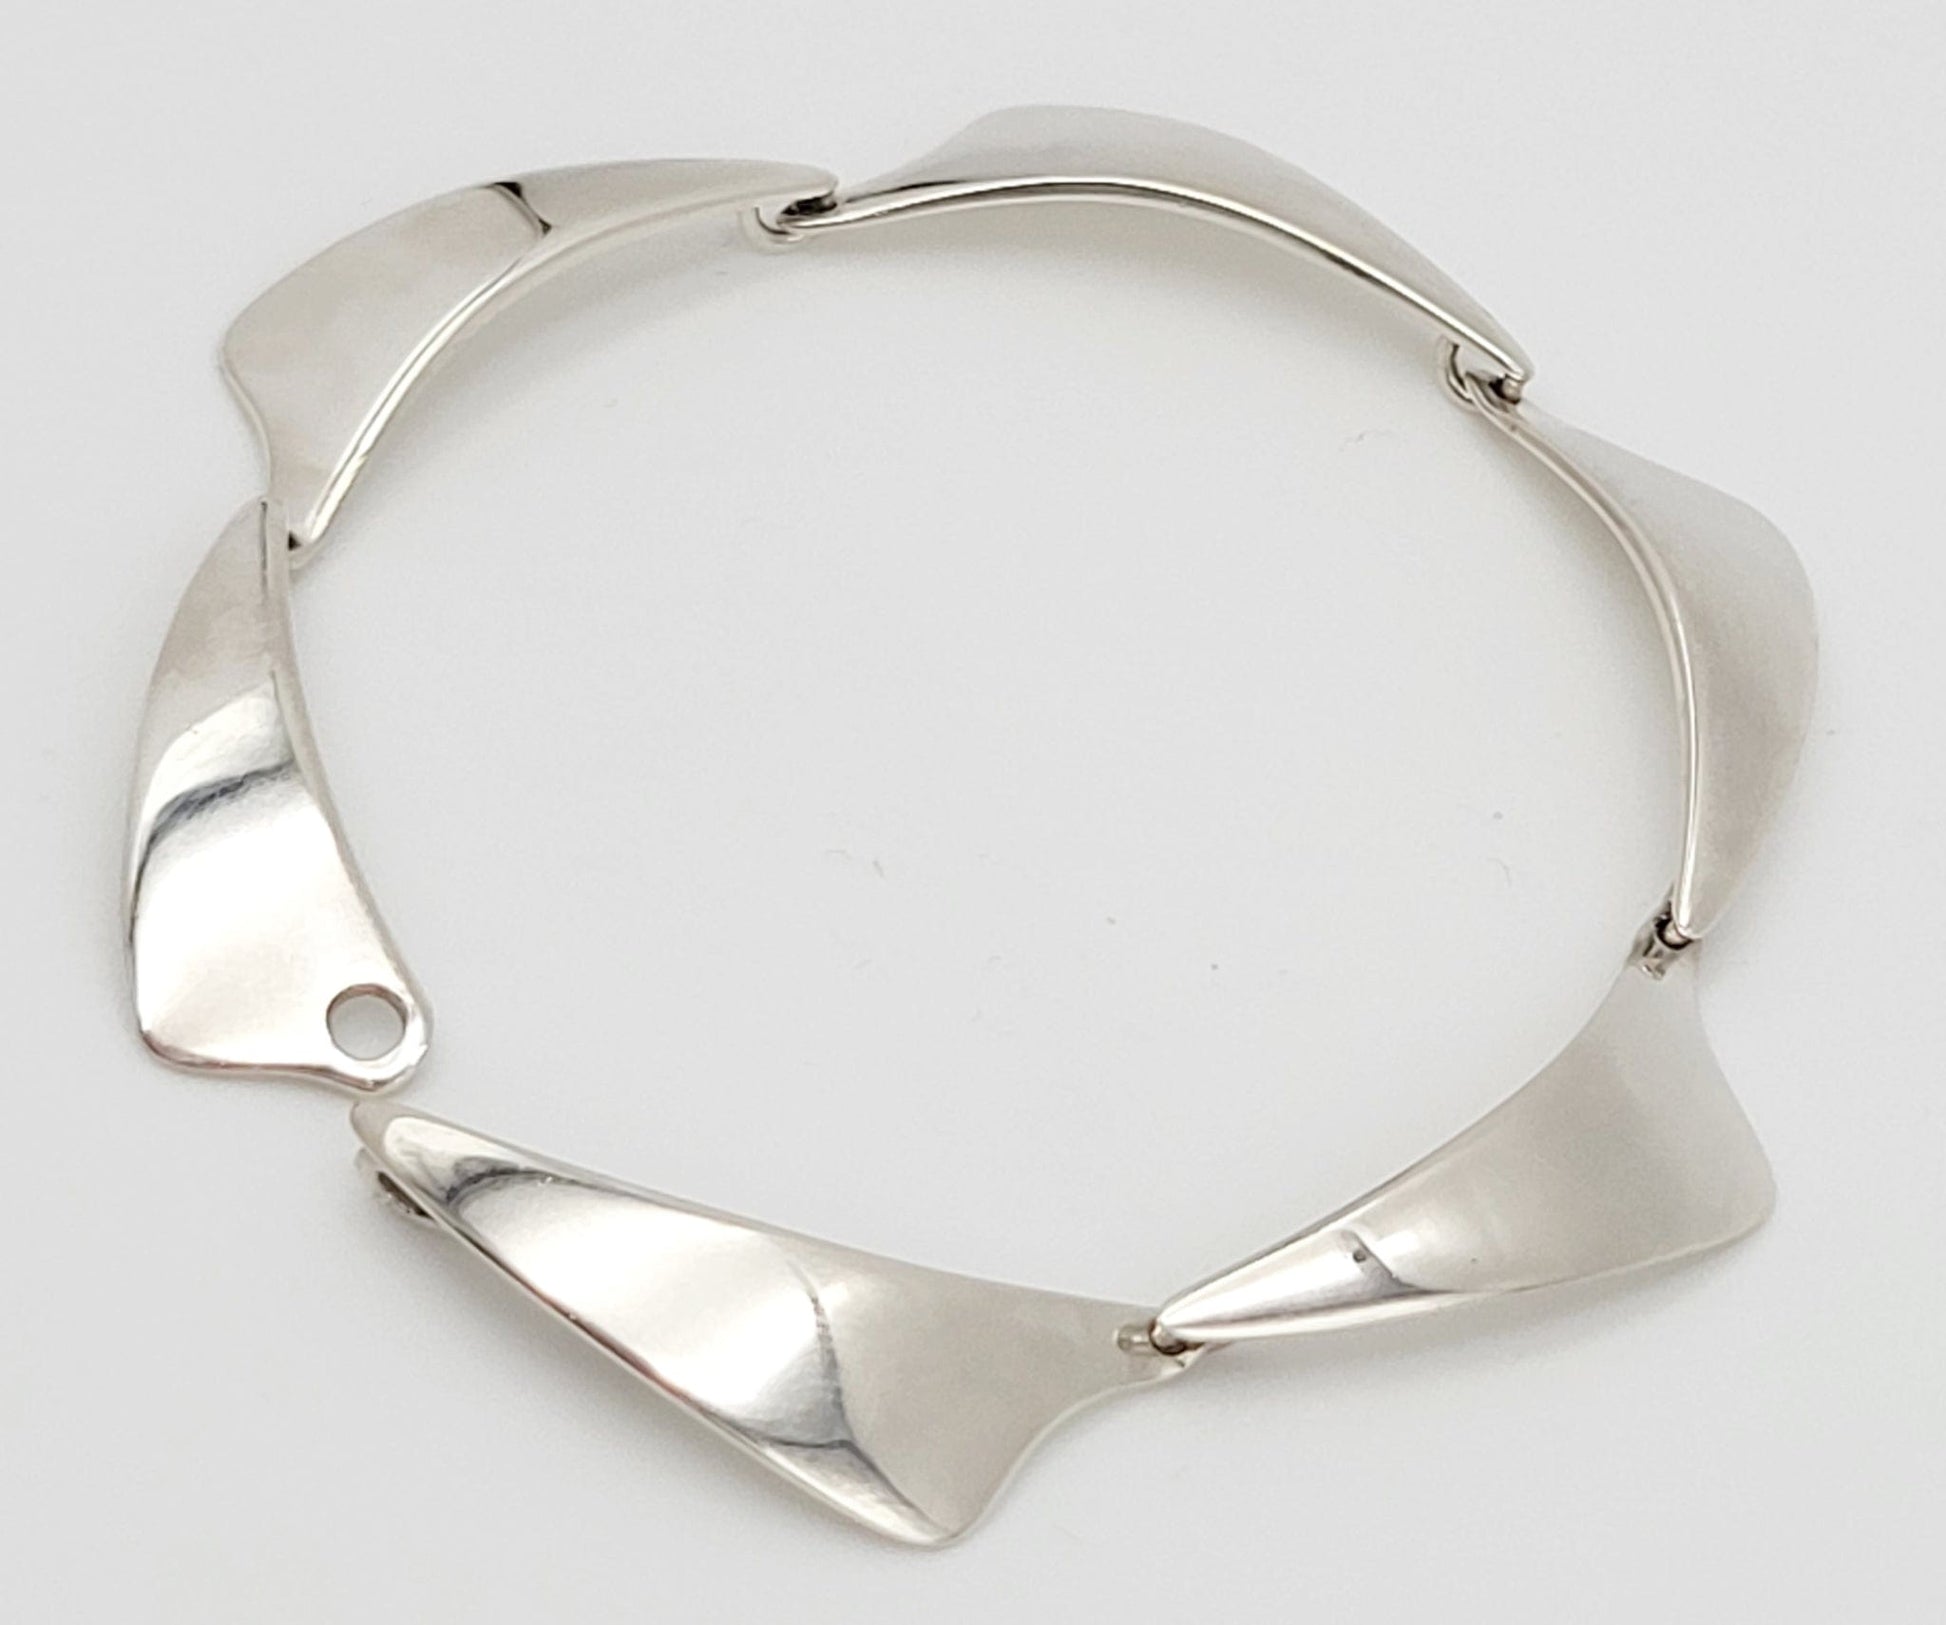 A & K Denmark Jewelry Aarre & Krogh Denmark Sterling Modernist Bracelet Circa 1960s